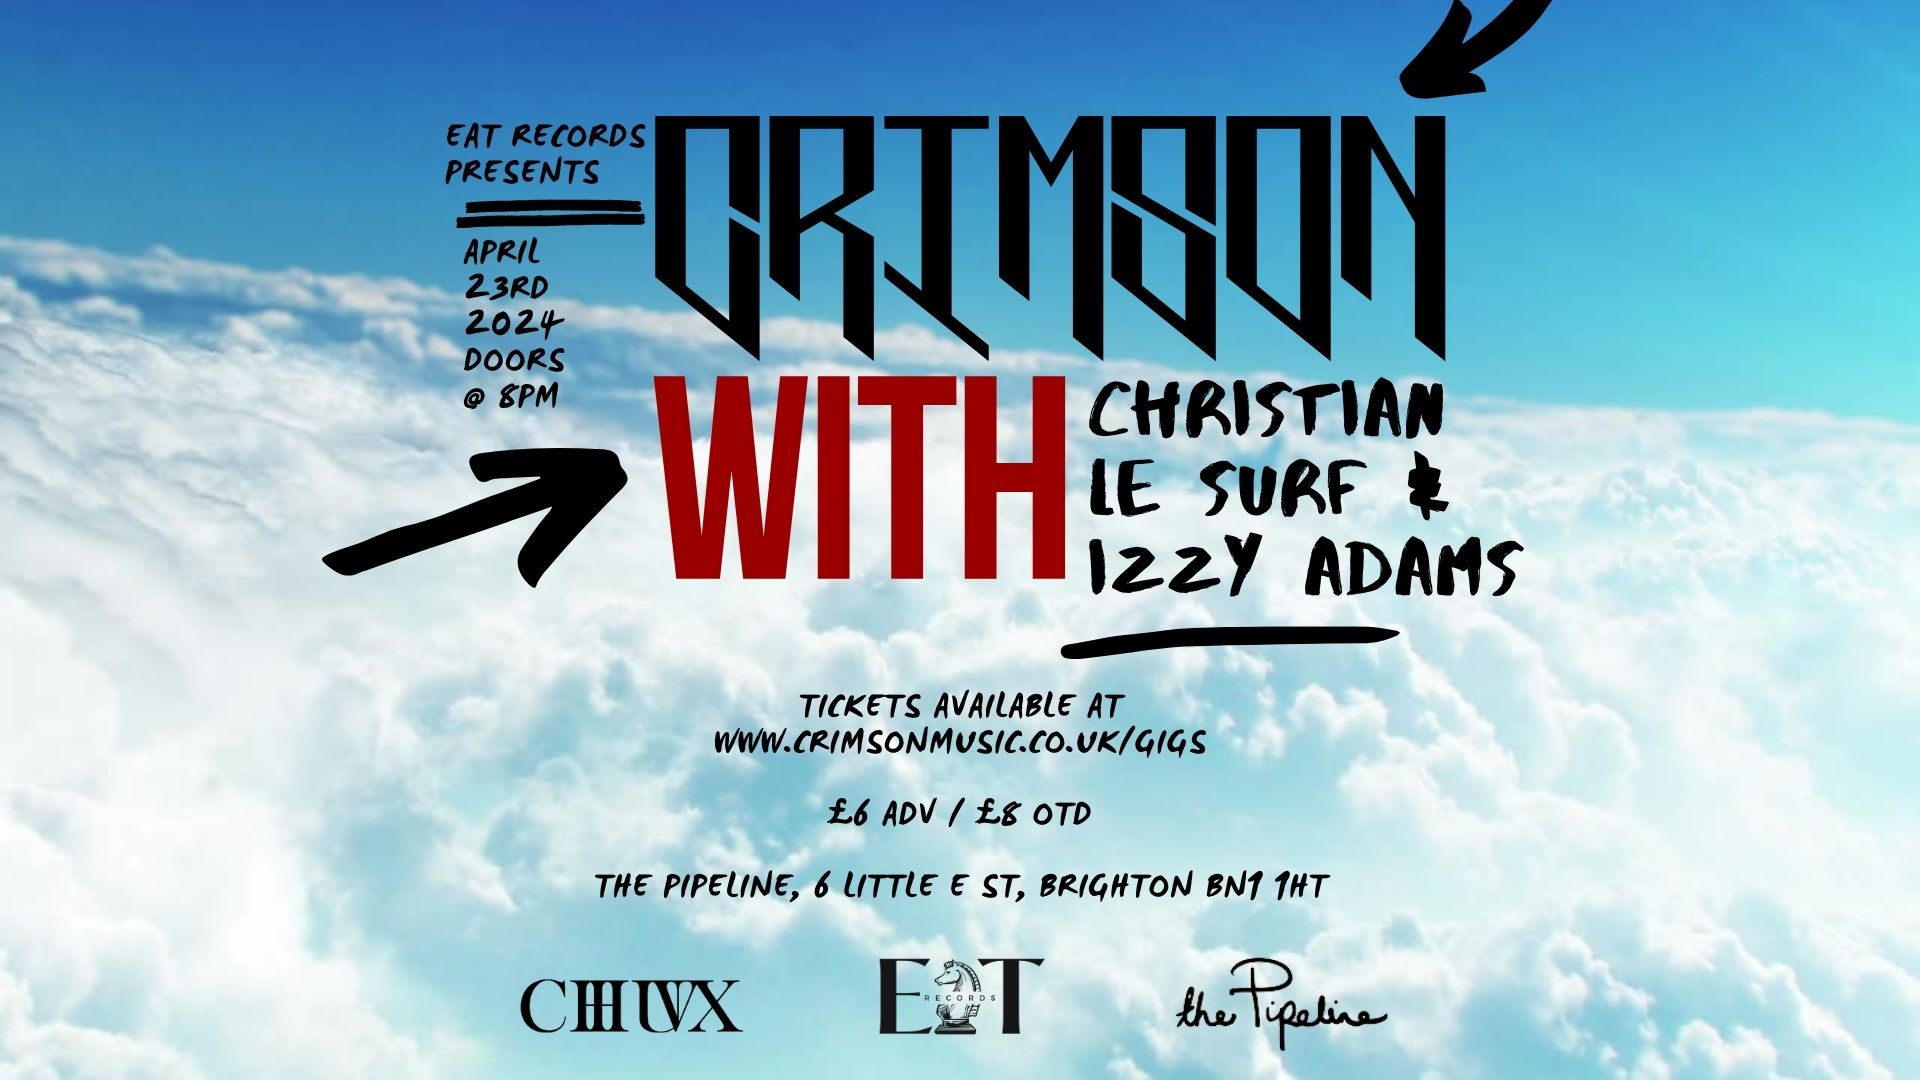 Crimson with Christian Le Surf & Izzy Adams